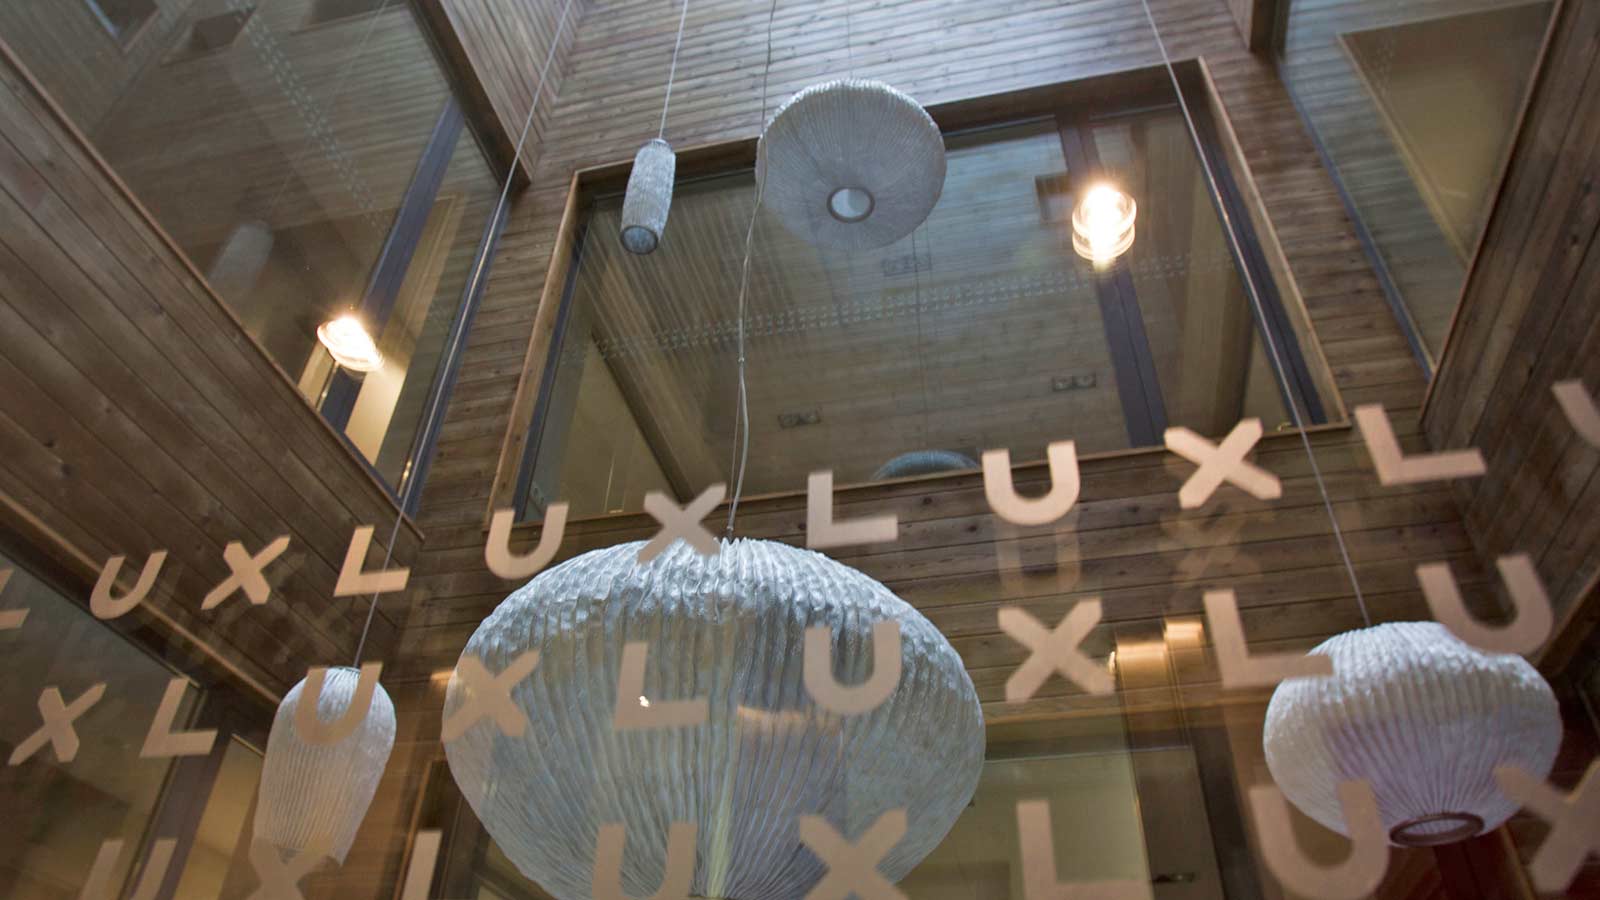 Lux Santiago  galeria